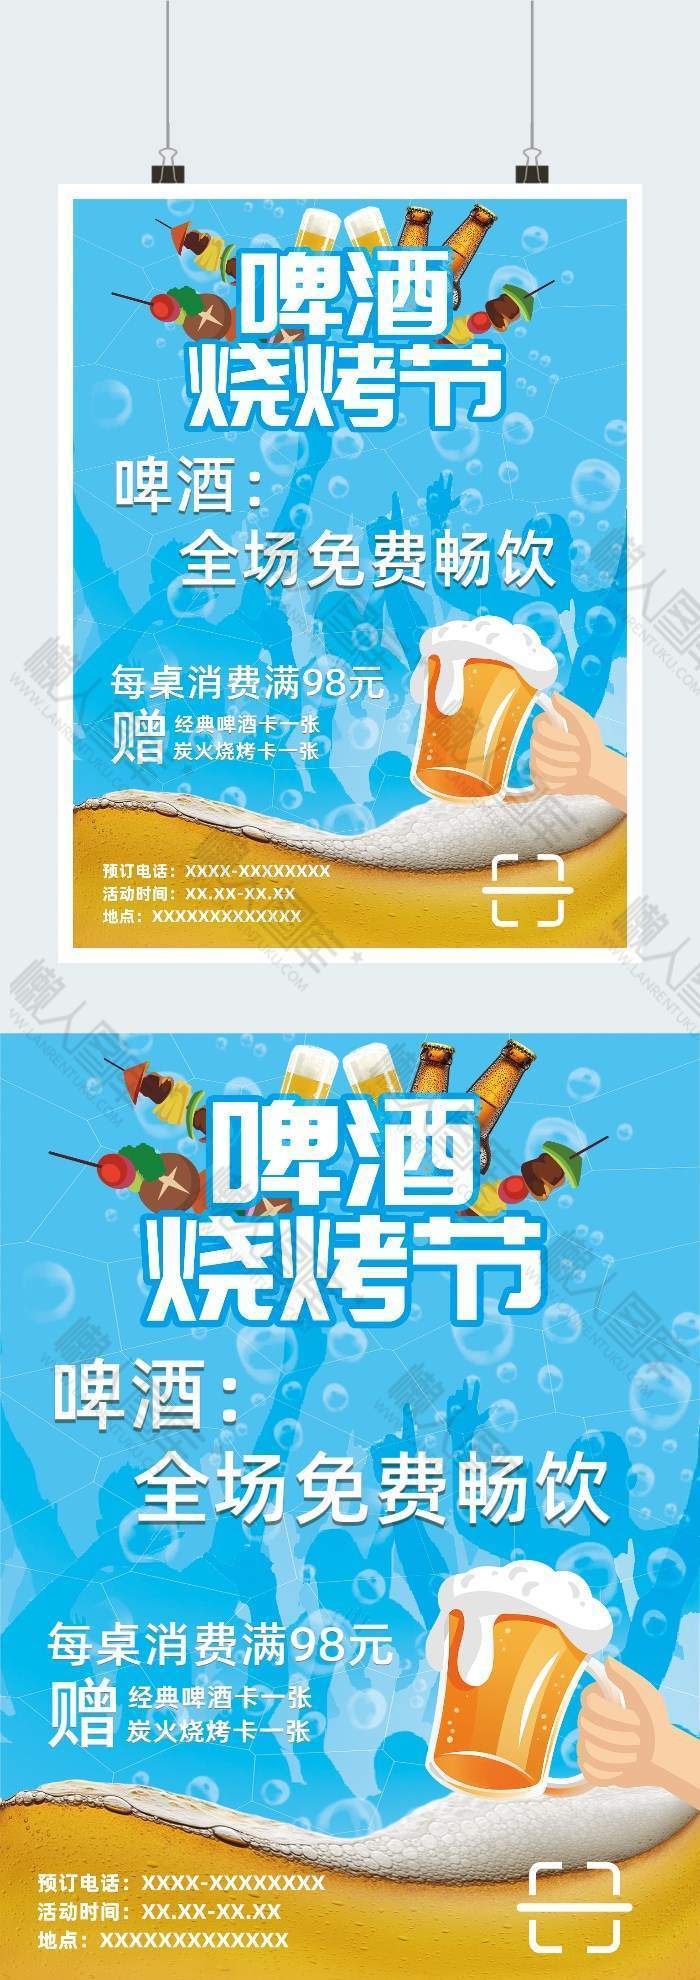 啤酒烧烤节海报